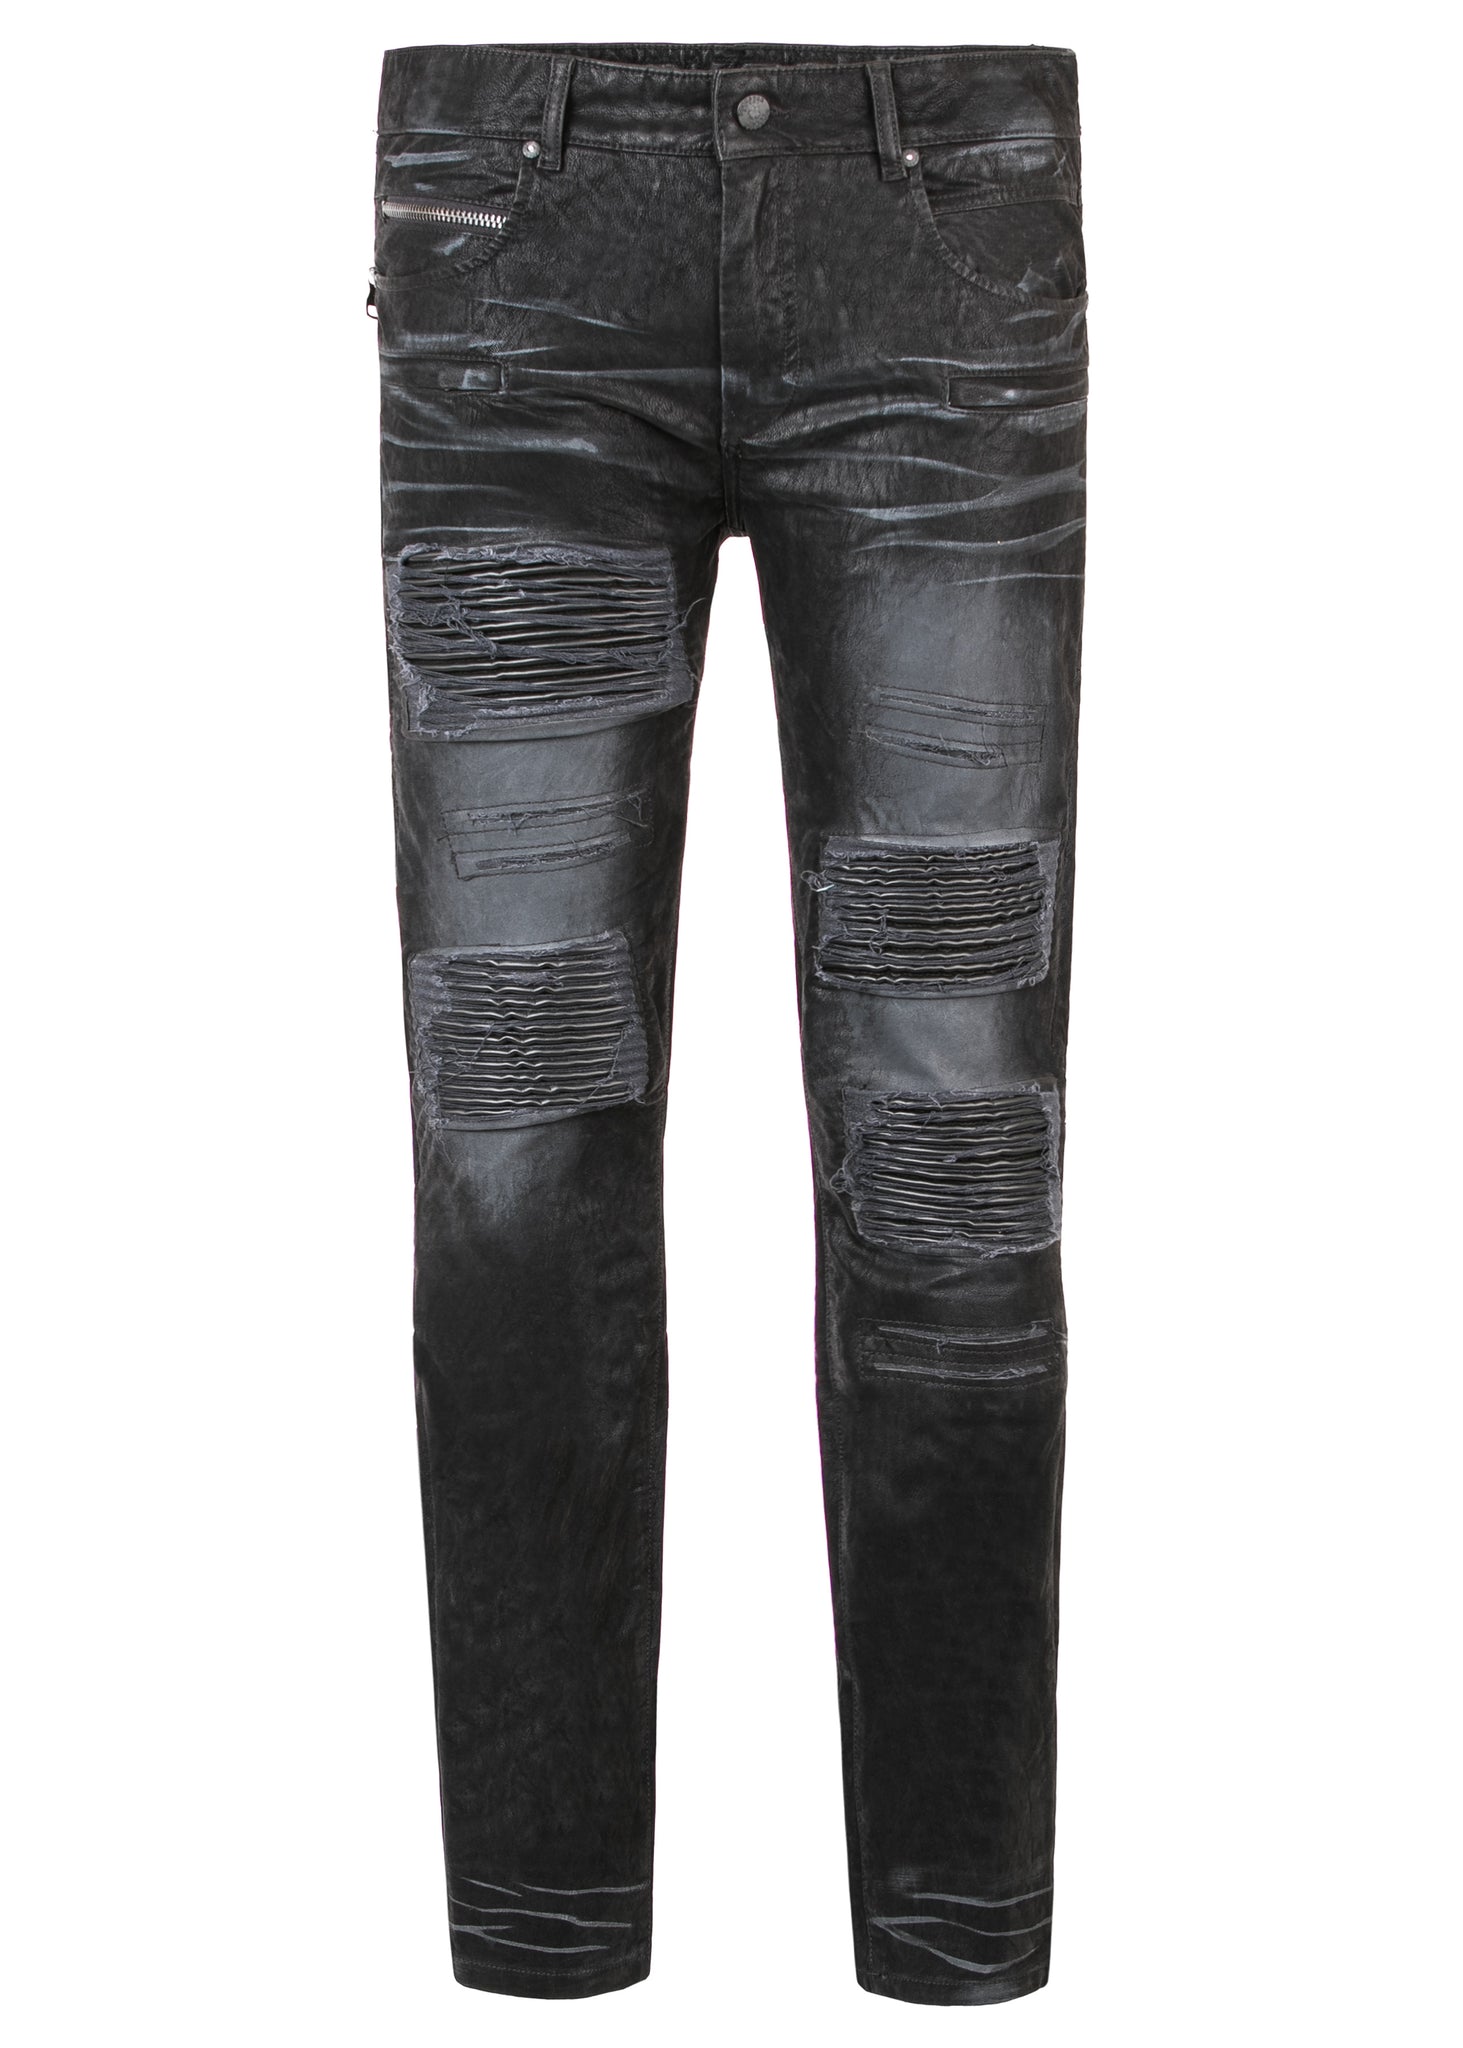 Georgio Motto Jeans (Outlet) – Rockstar Original